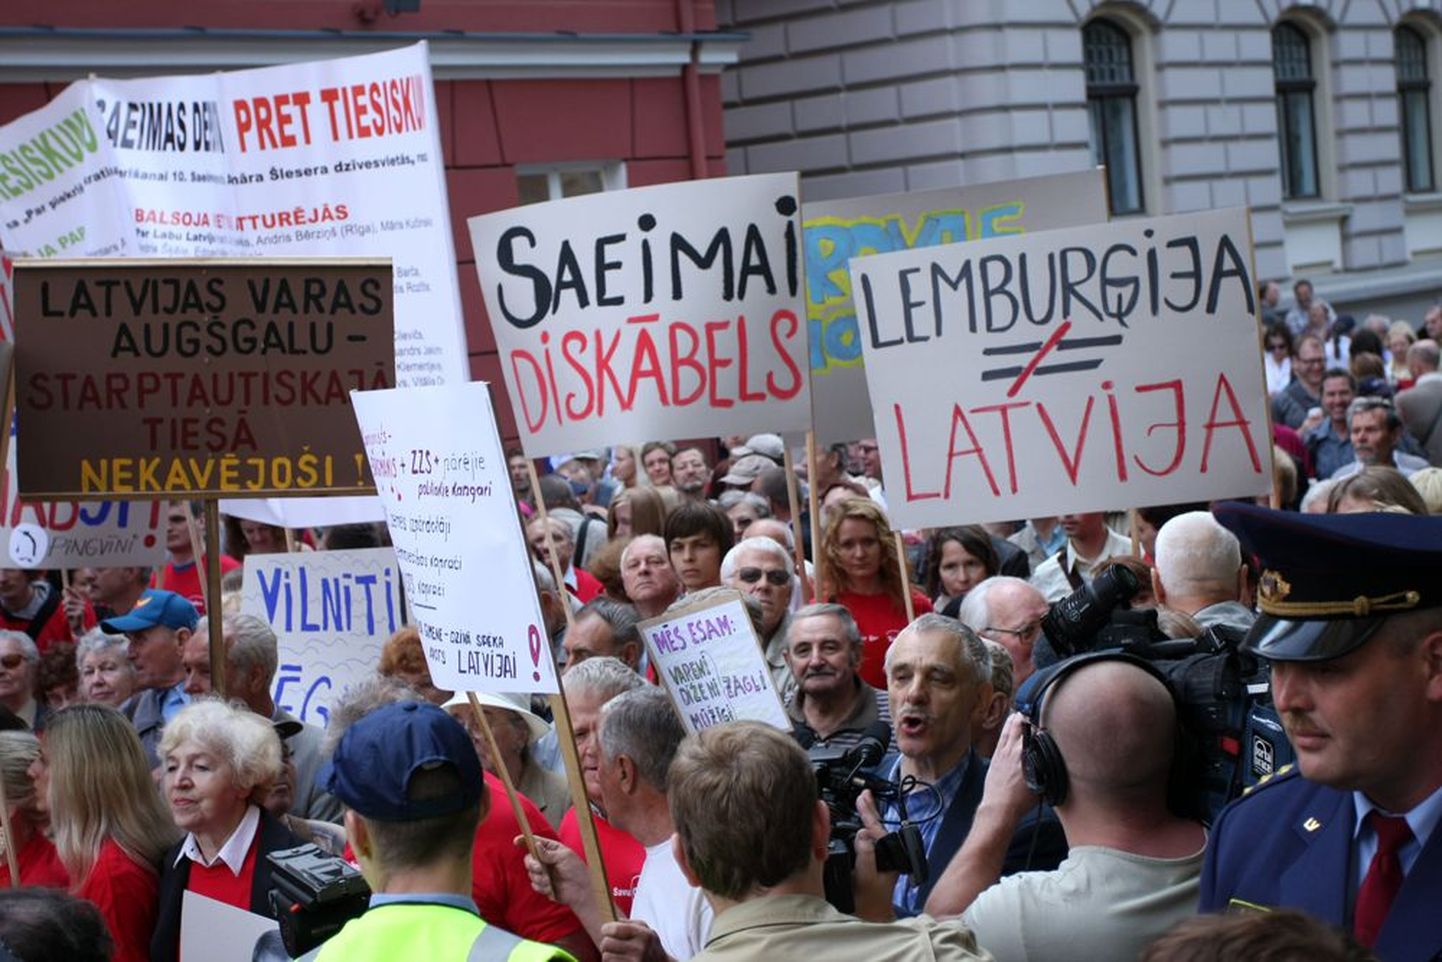 Митинг против коррупции на улицах Риги, собравшийся после президентских выборов в начале июня, когда Сейм отказался поддержать прежнего главу государства Валдиса Затлерса, объявившего о роспуске Сейма.